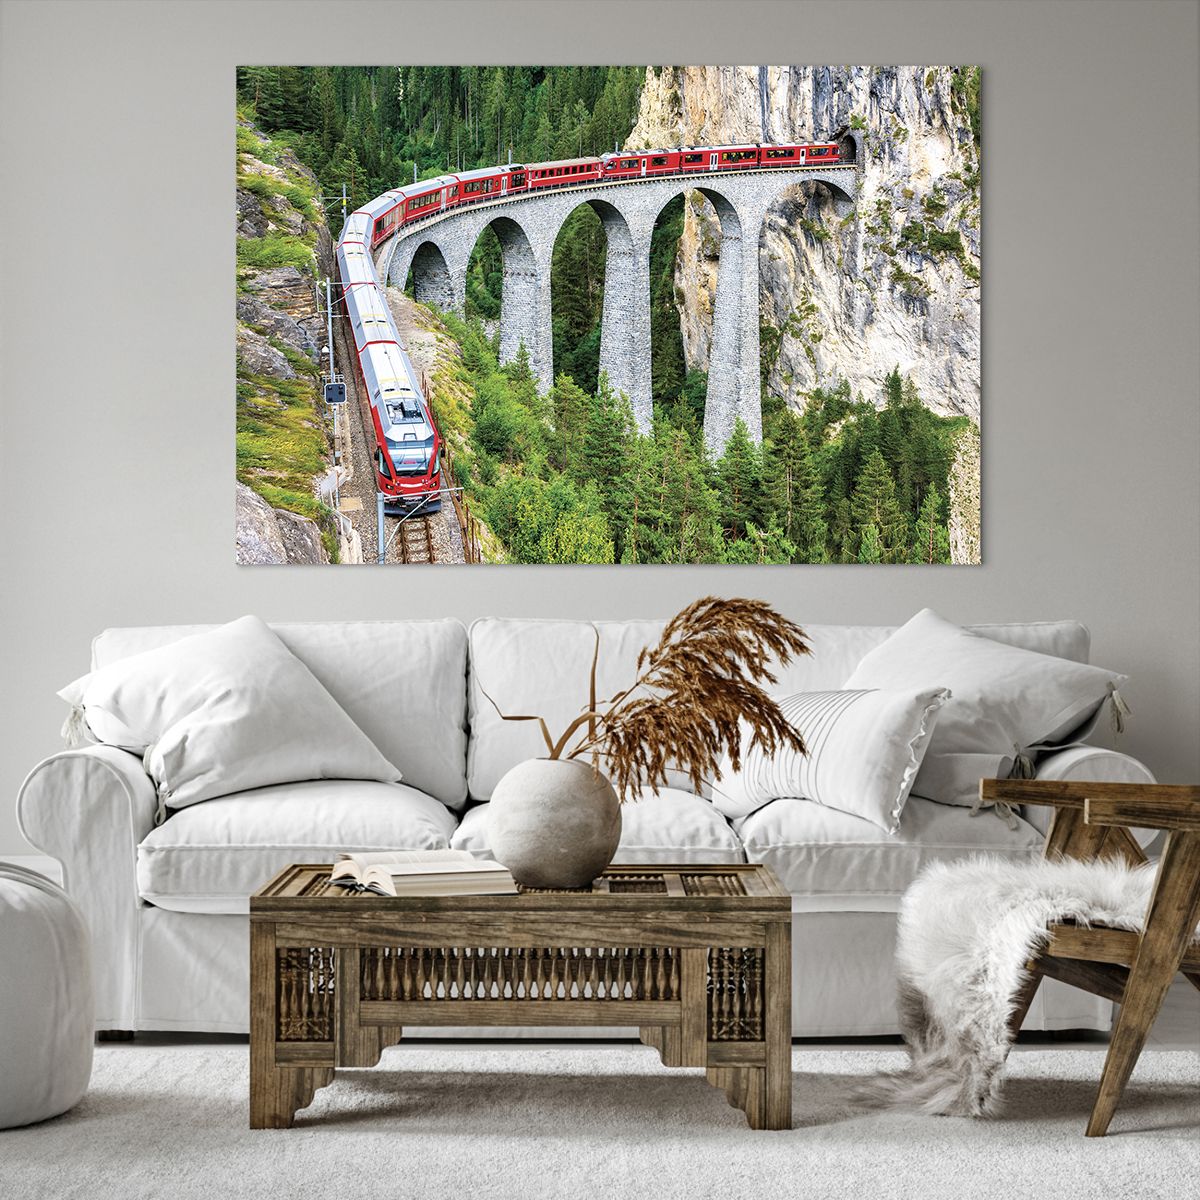 Obrazy na płótnie Most Kolejowy, Obrazy na płótnie Krajobraz Górski, Obrazy na płótnie Pociąg Pasażerski, Obrazy na płótnie Góry, Obrazy na płótnie Alpy